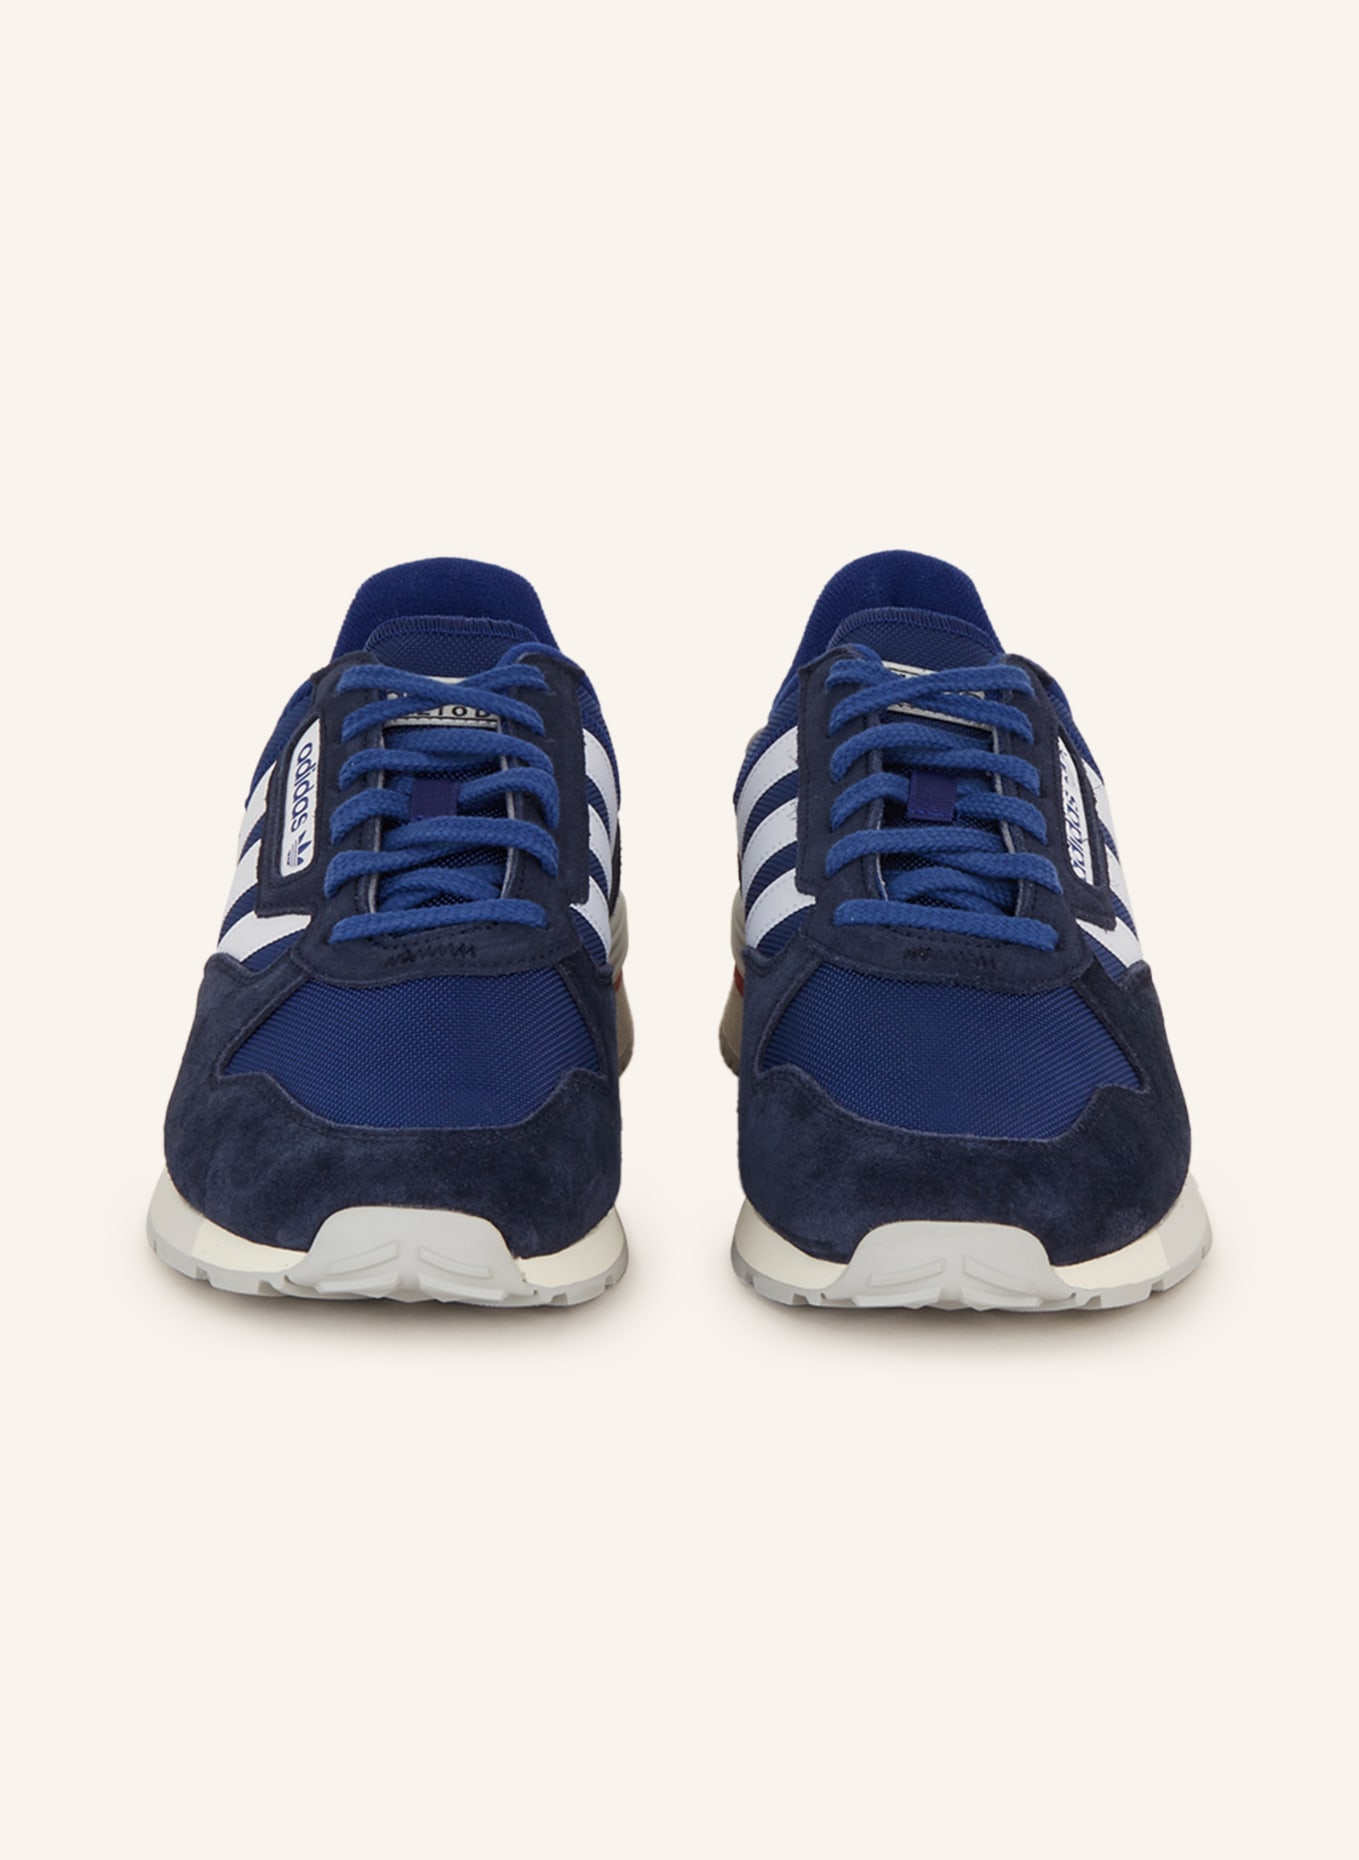 adidas Originals Sneakers in TREZIOD blue/ dark blue white/ 2